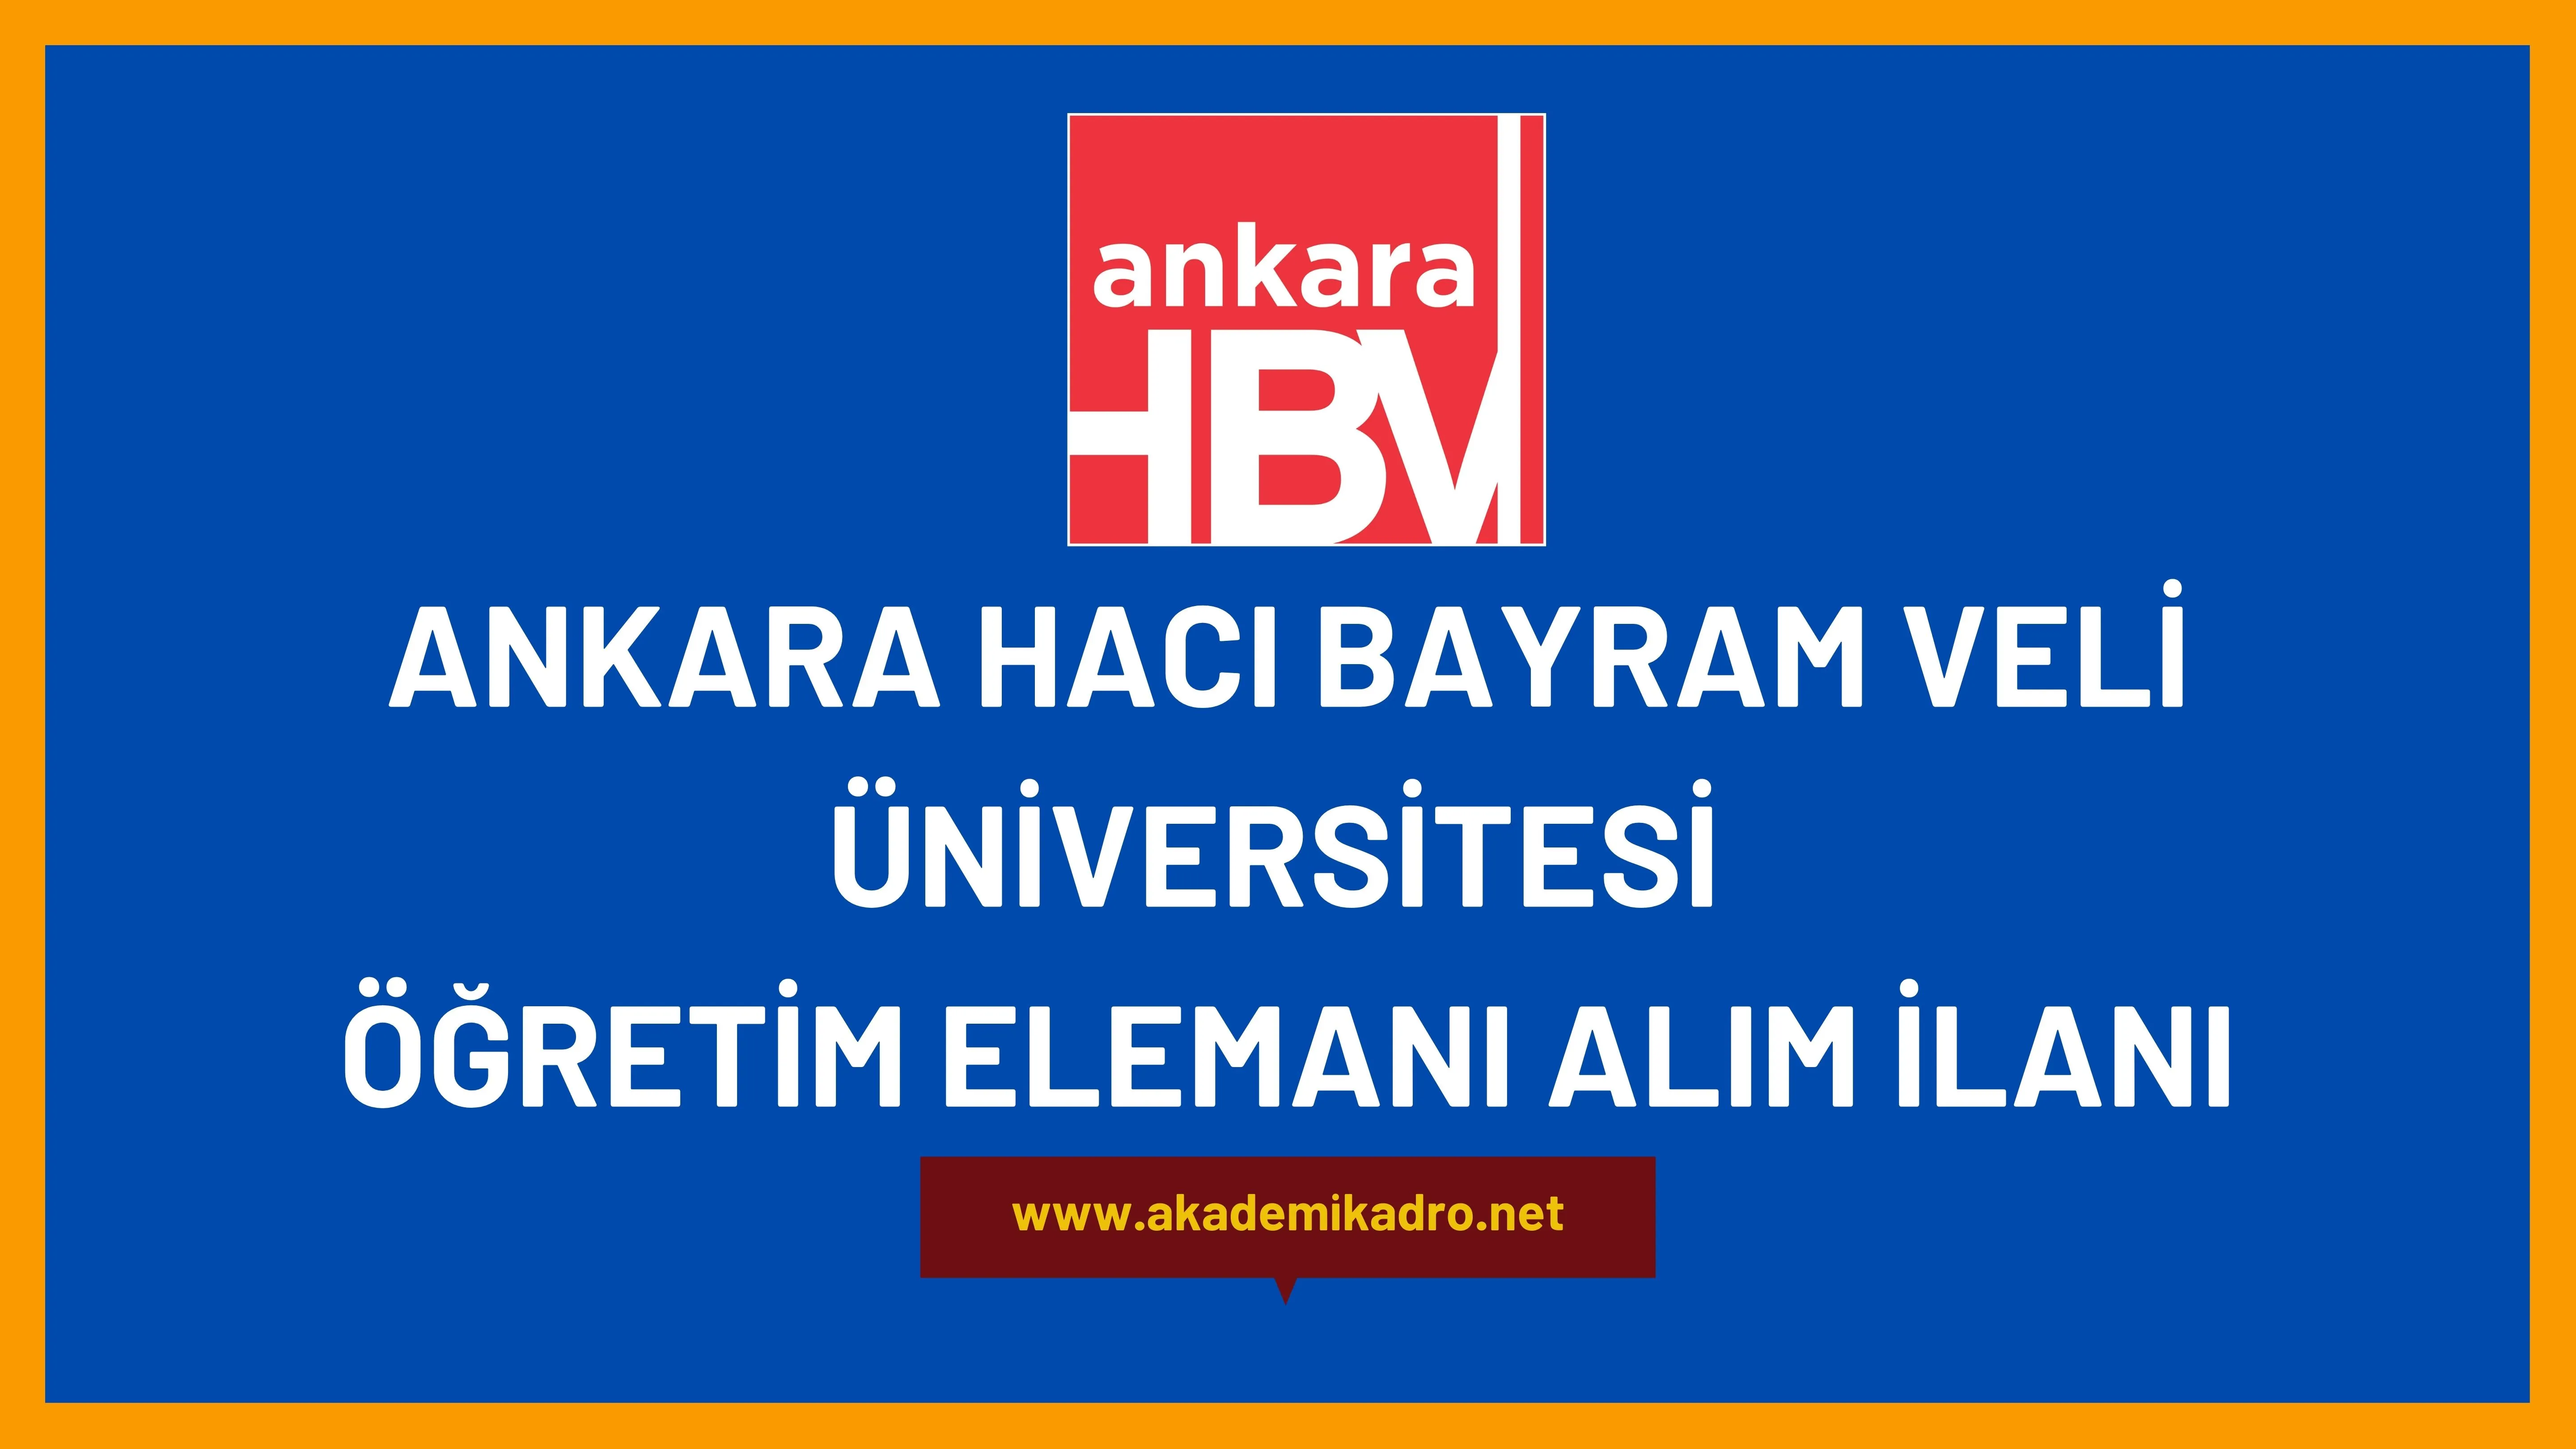 Ankara Hacı Bayram Veli Üniversitesi 7 Öğretim Görevlisi ve 7 Öğretim üyesi alacaktır. Son başvuru tarihi 09 Aralık 2022